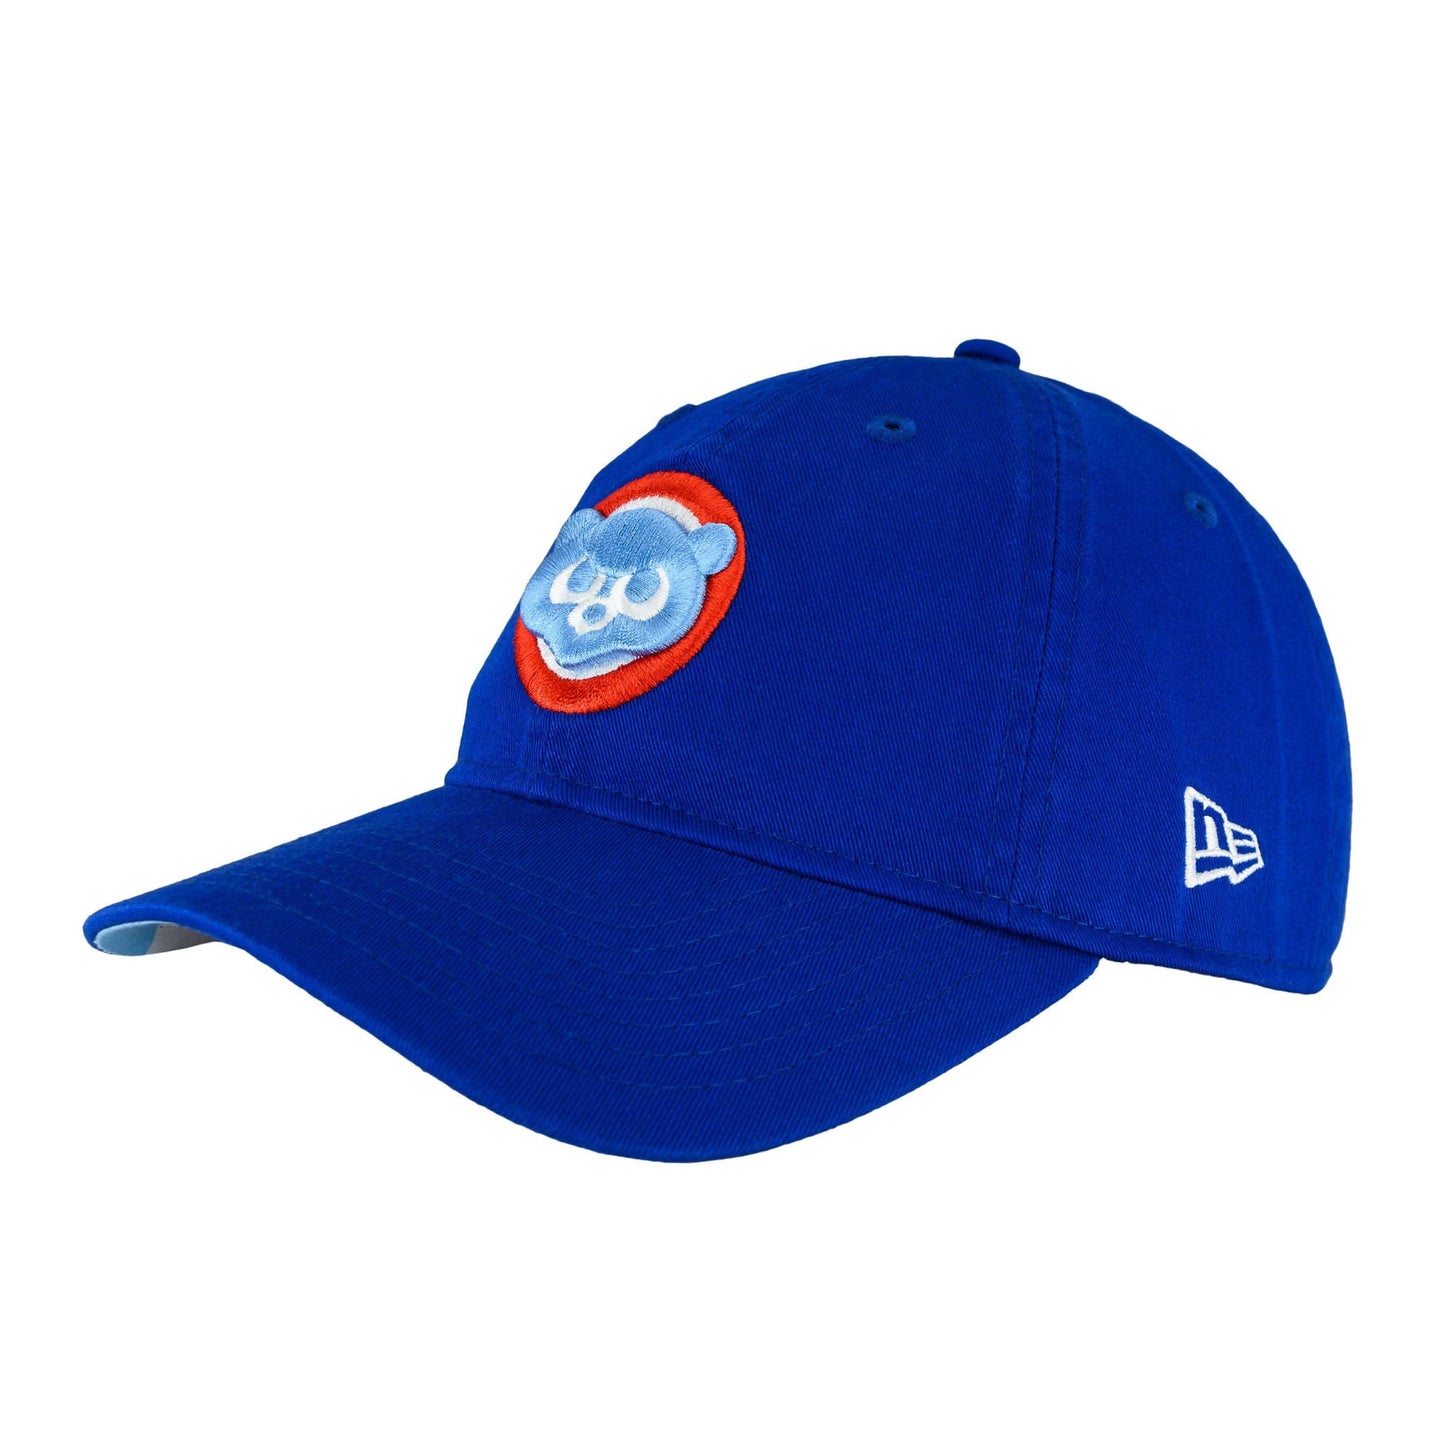 Chicago Cubs Cooperstown New Era 9TWENTY Adjustable Hat